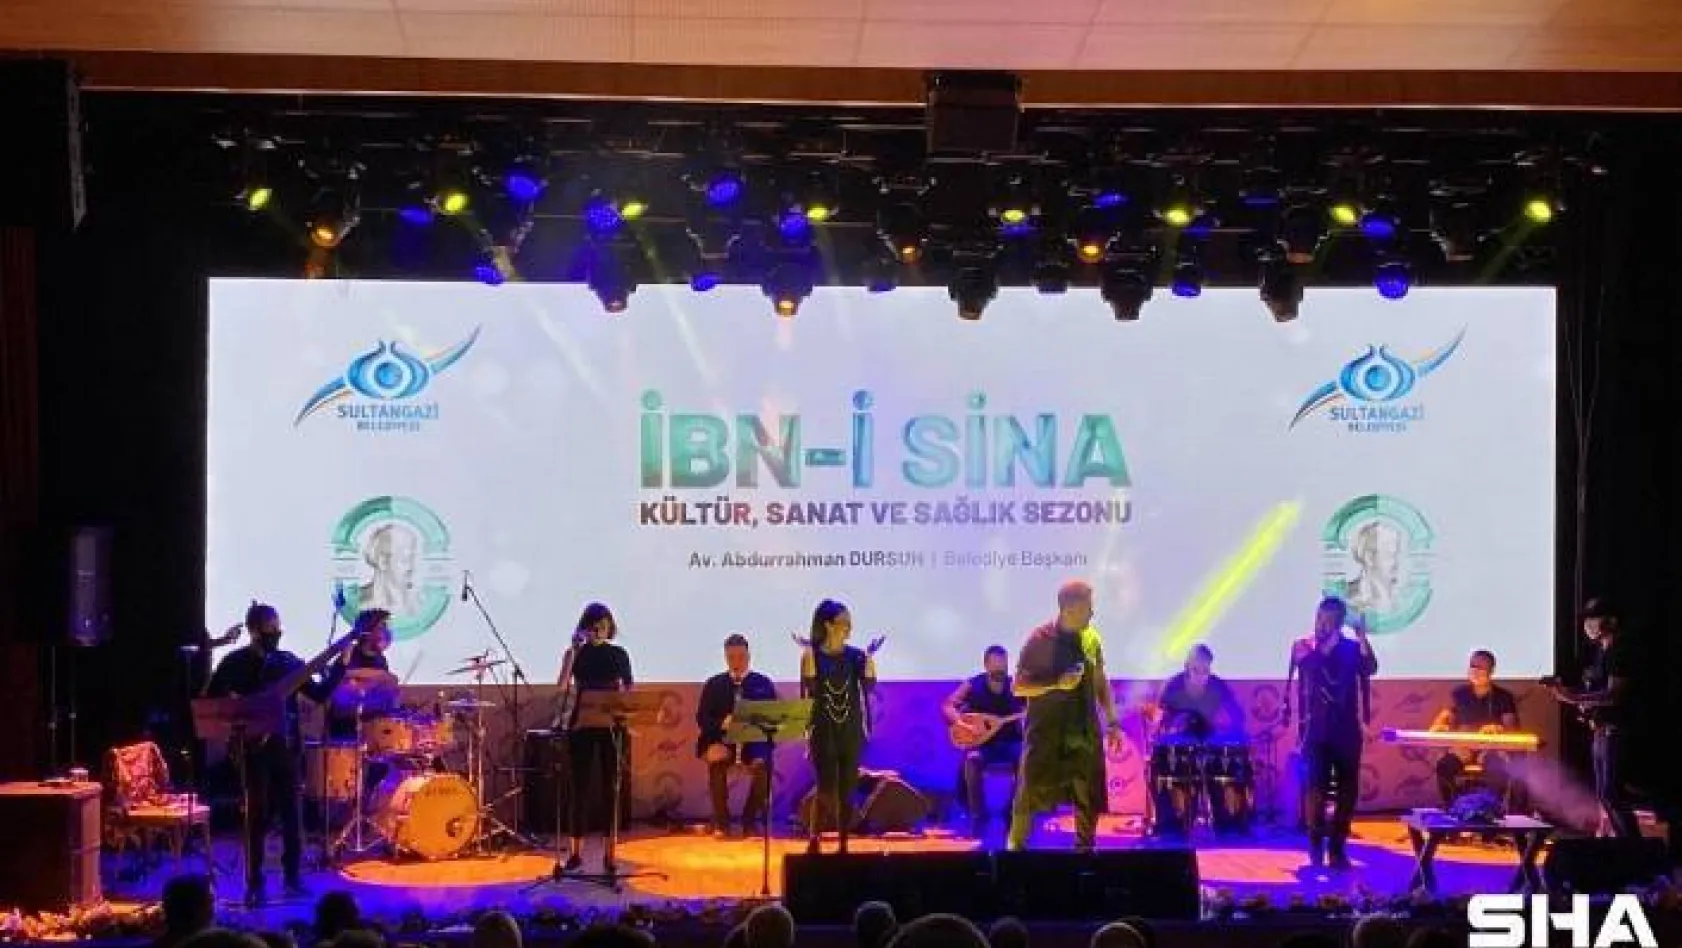 Sultangazi'de İbn-i Sina Kültür Sanat ve Sağlık Sezonu açıldı